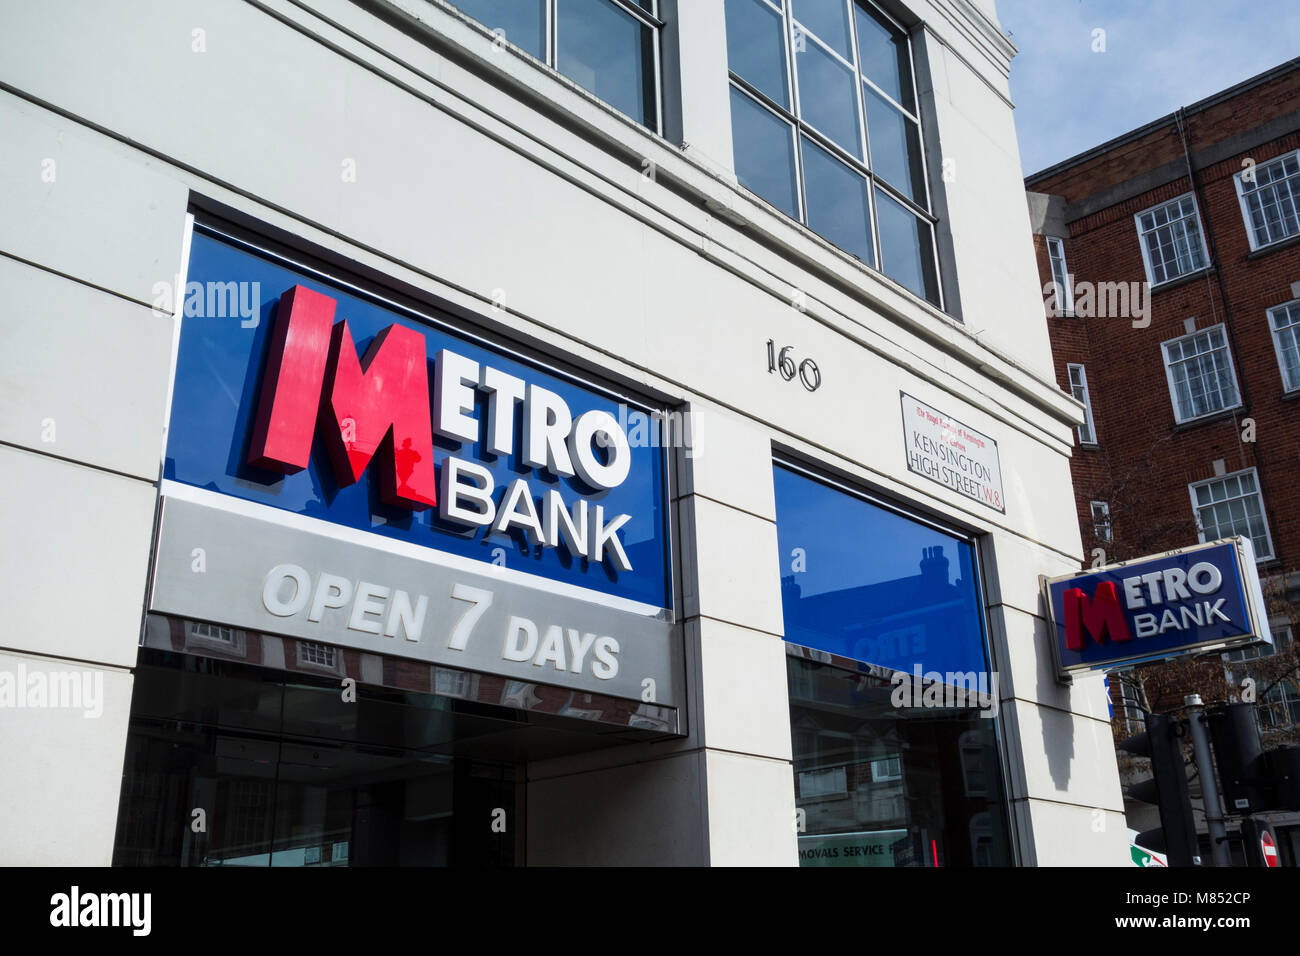 Banque Métro sur Kensington High Street, Kensington, London, UK Banque D'Images